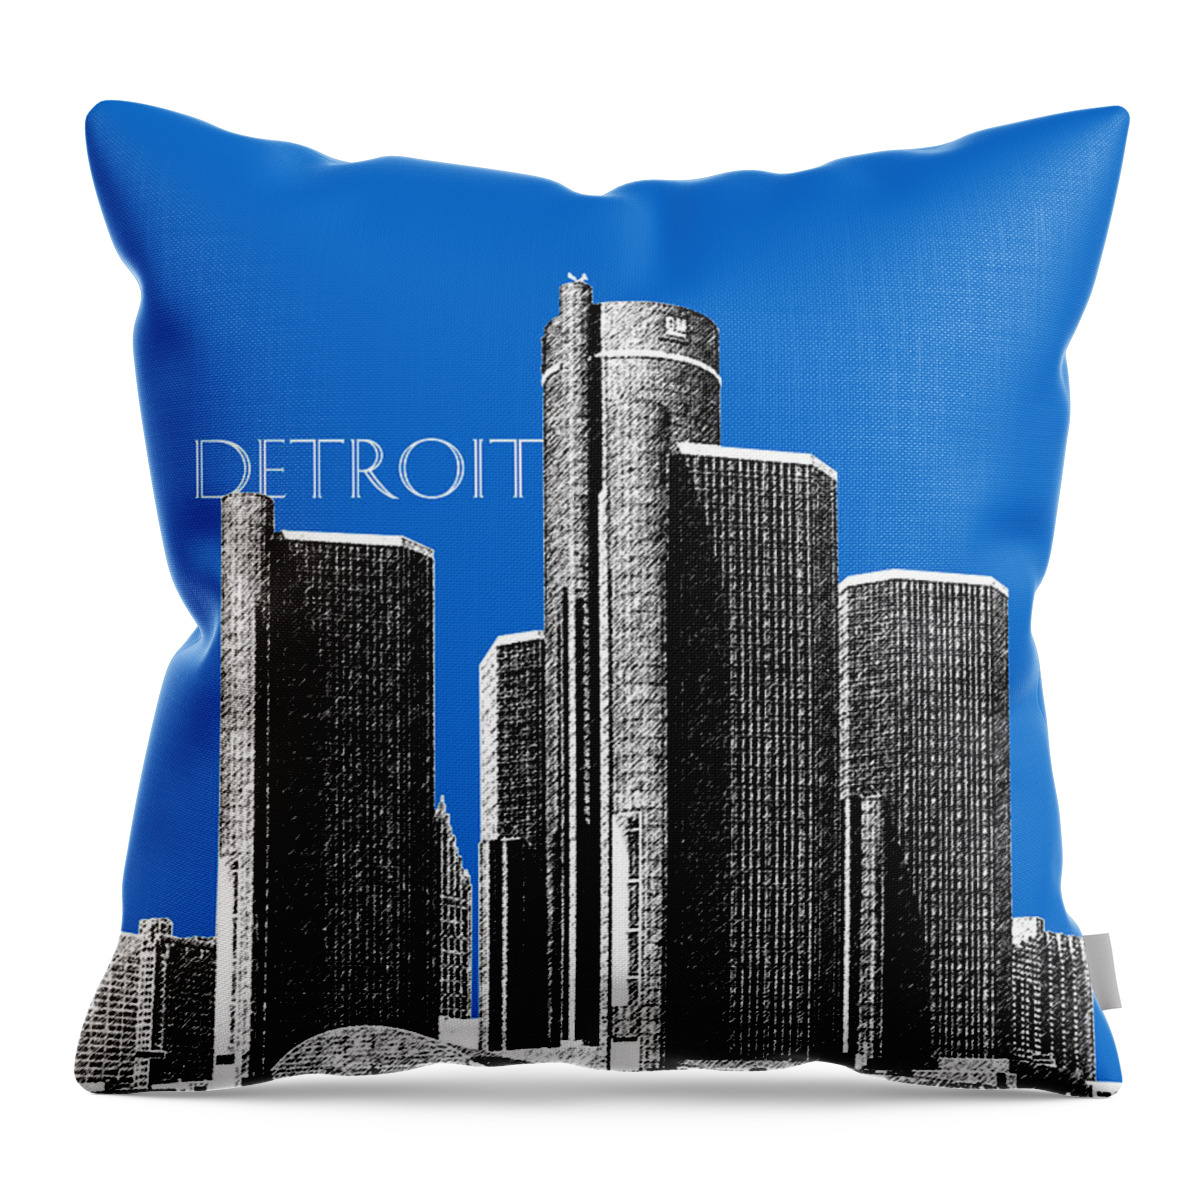 Detroit Throw Pillow featuring the digital art Detroit Skyline 1 - Blue by DB Artist